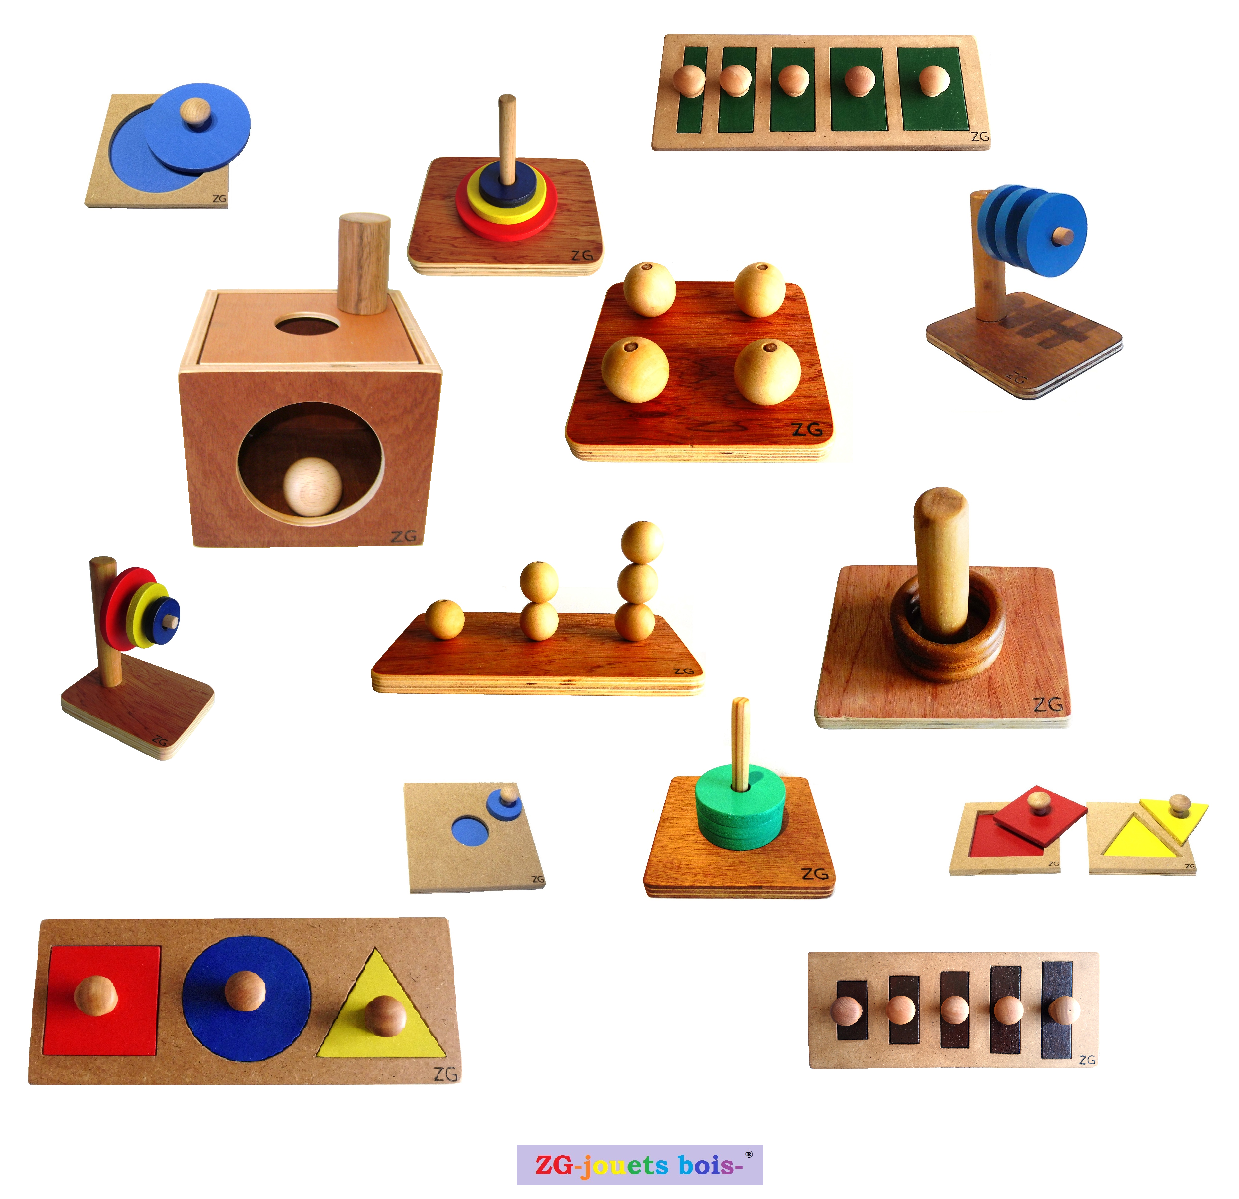 matériel montessori nido, encastrement et empilage premier âge, fabrication française artisanale ZG-jouetsbois- 